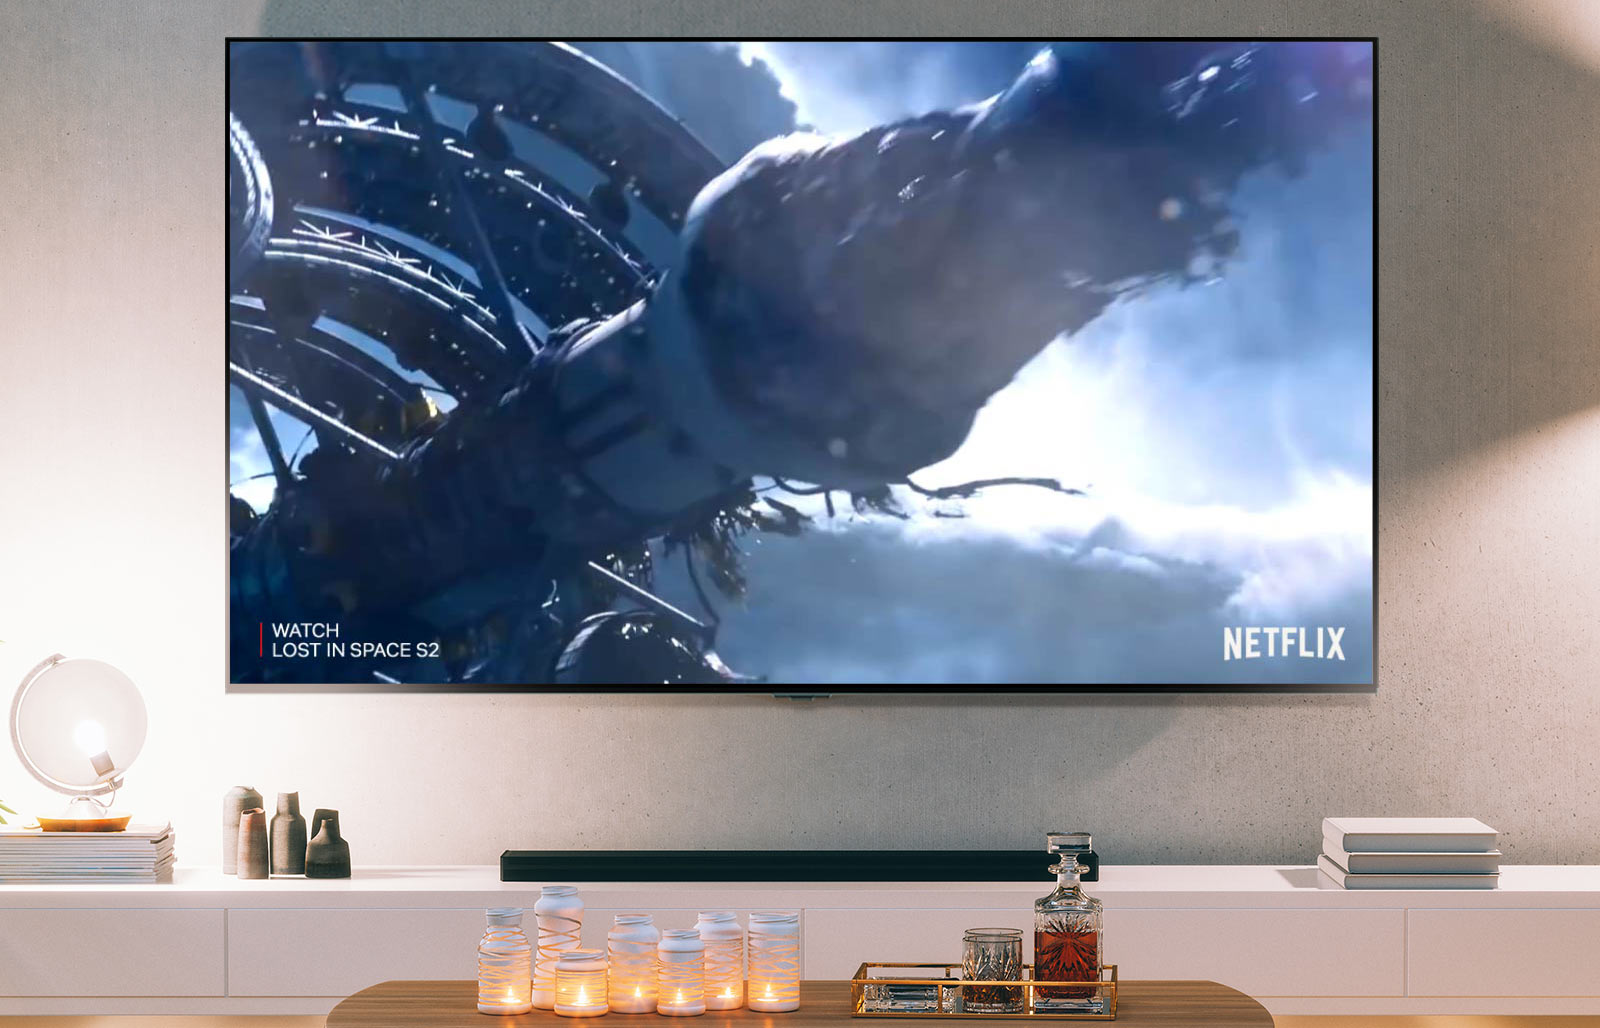 TV zaslon z vložkom iz serije Lost in Space S2 na Netflixu (predvajanje videa).